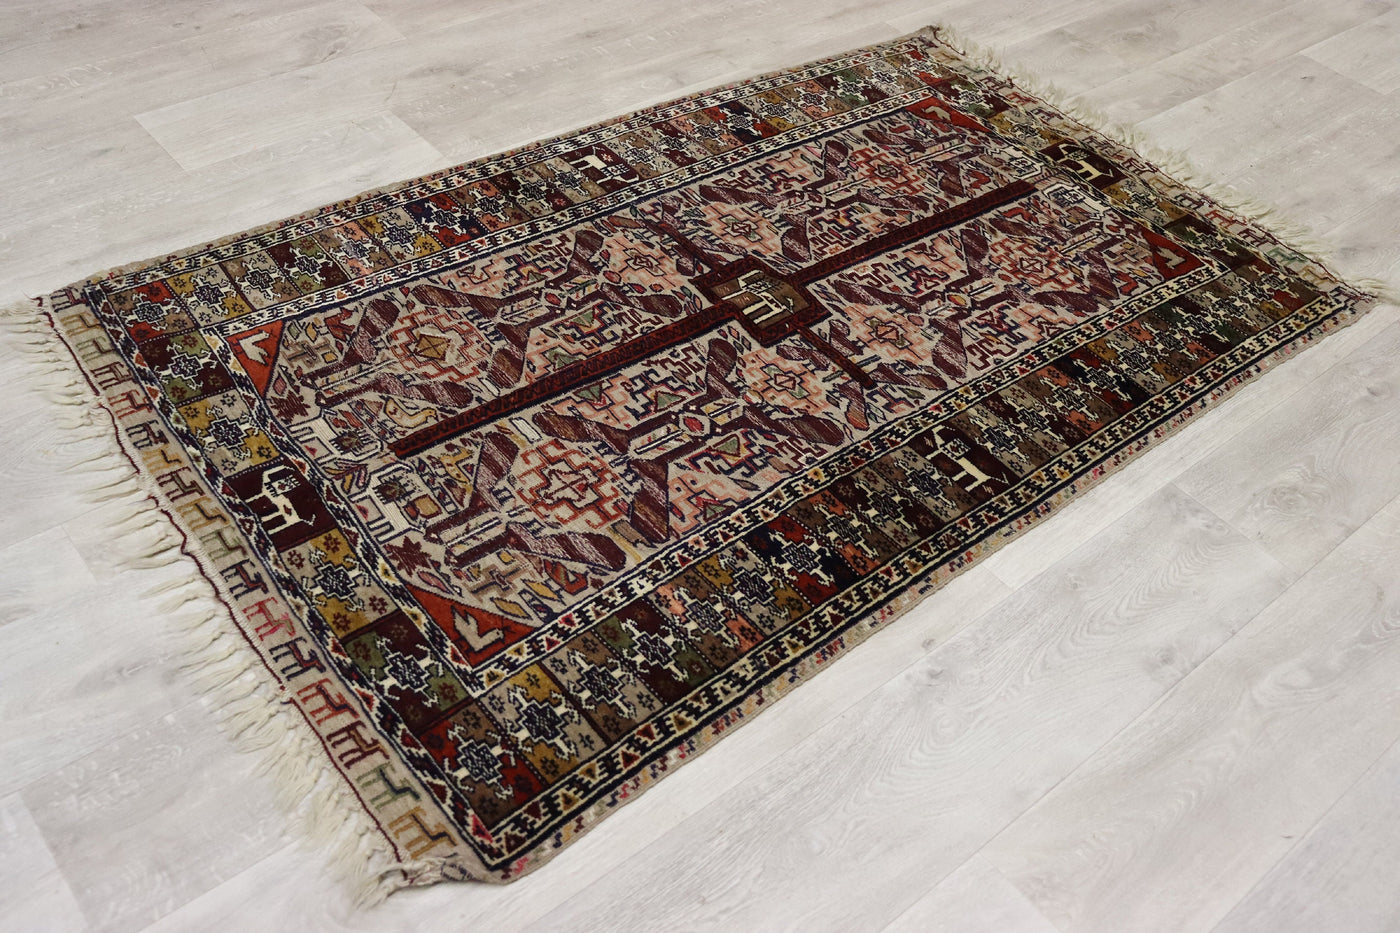 170x105 cm Antik orient handgewebte Teppich Nomaden Balouch sumakh kelim afghan Beloch Flur Läufer kilim Nr- 22K Teppiche Orientsbazar   